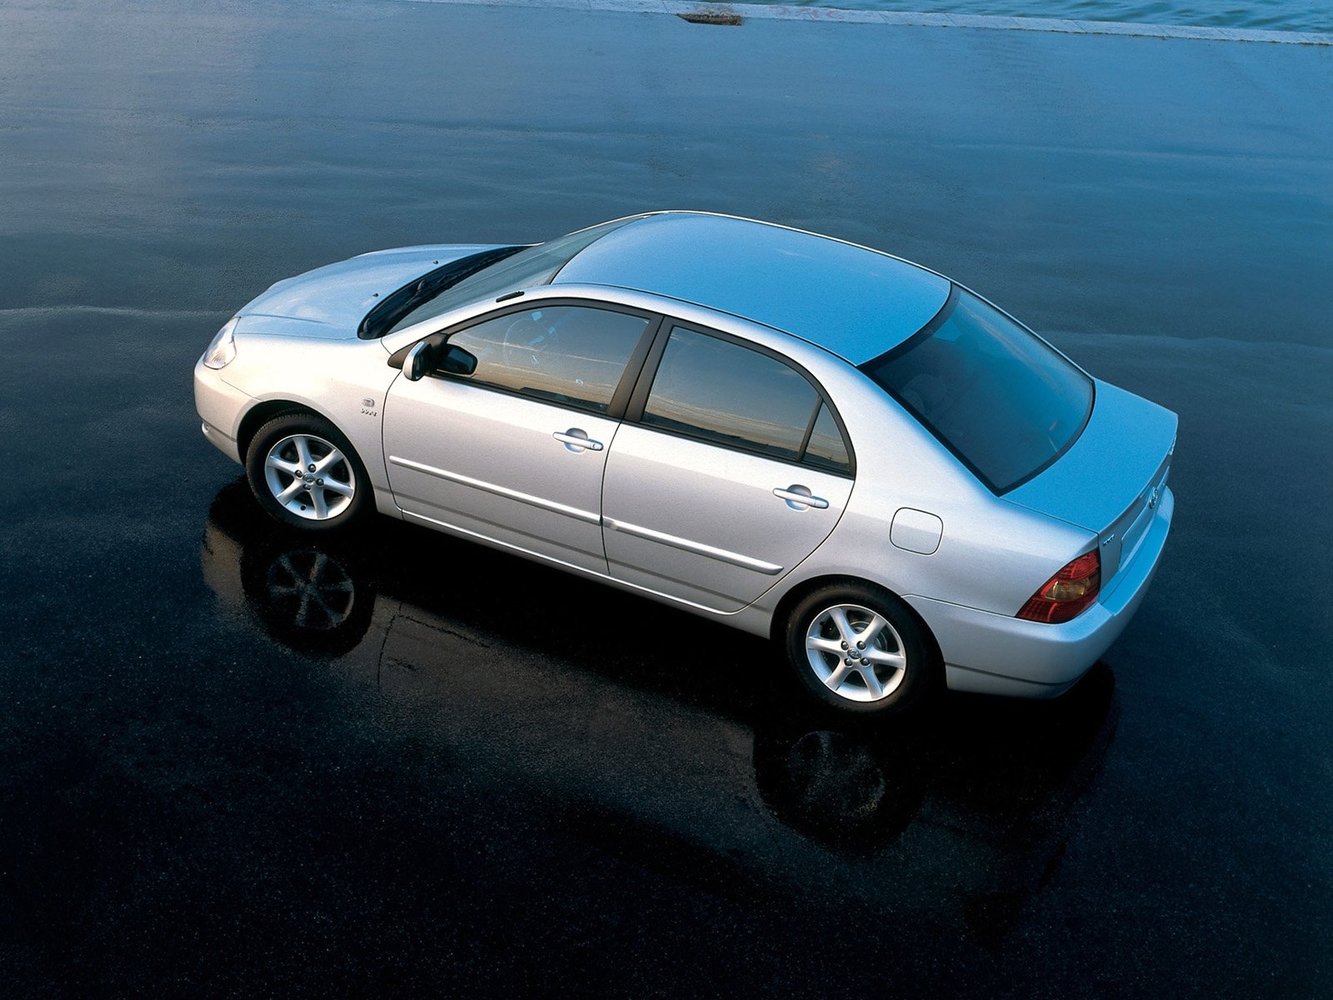 седан Toyota Corolla 2001 - 2004г выпуска модификация 1.3 AT (88 л.с.)